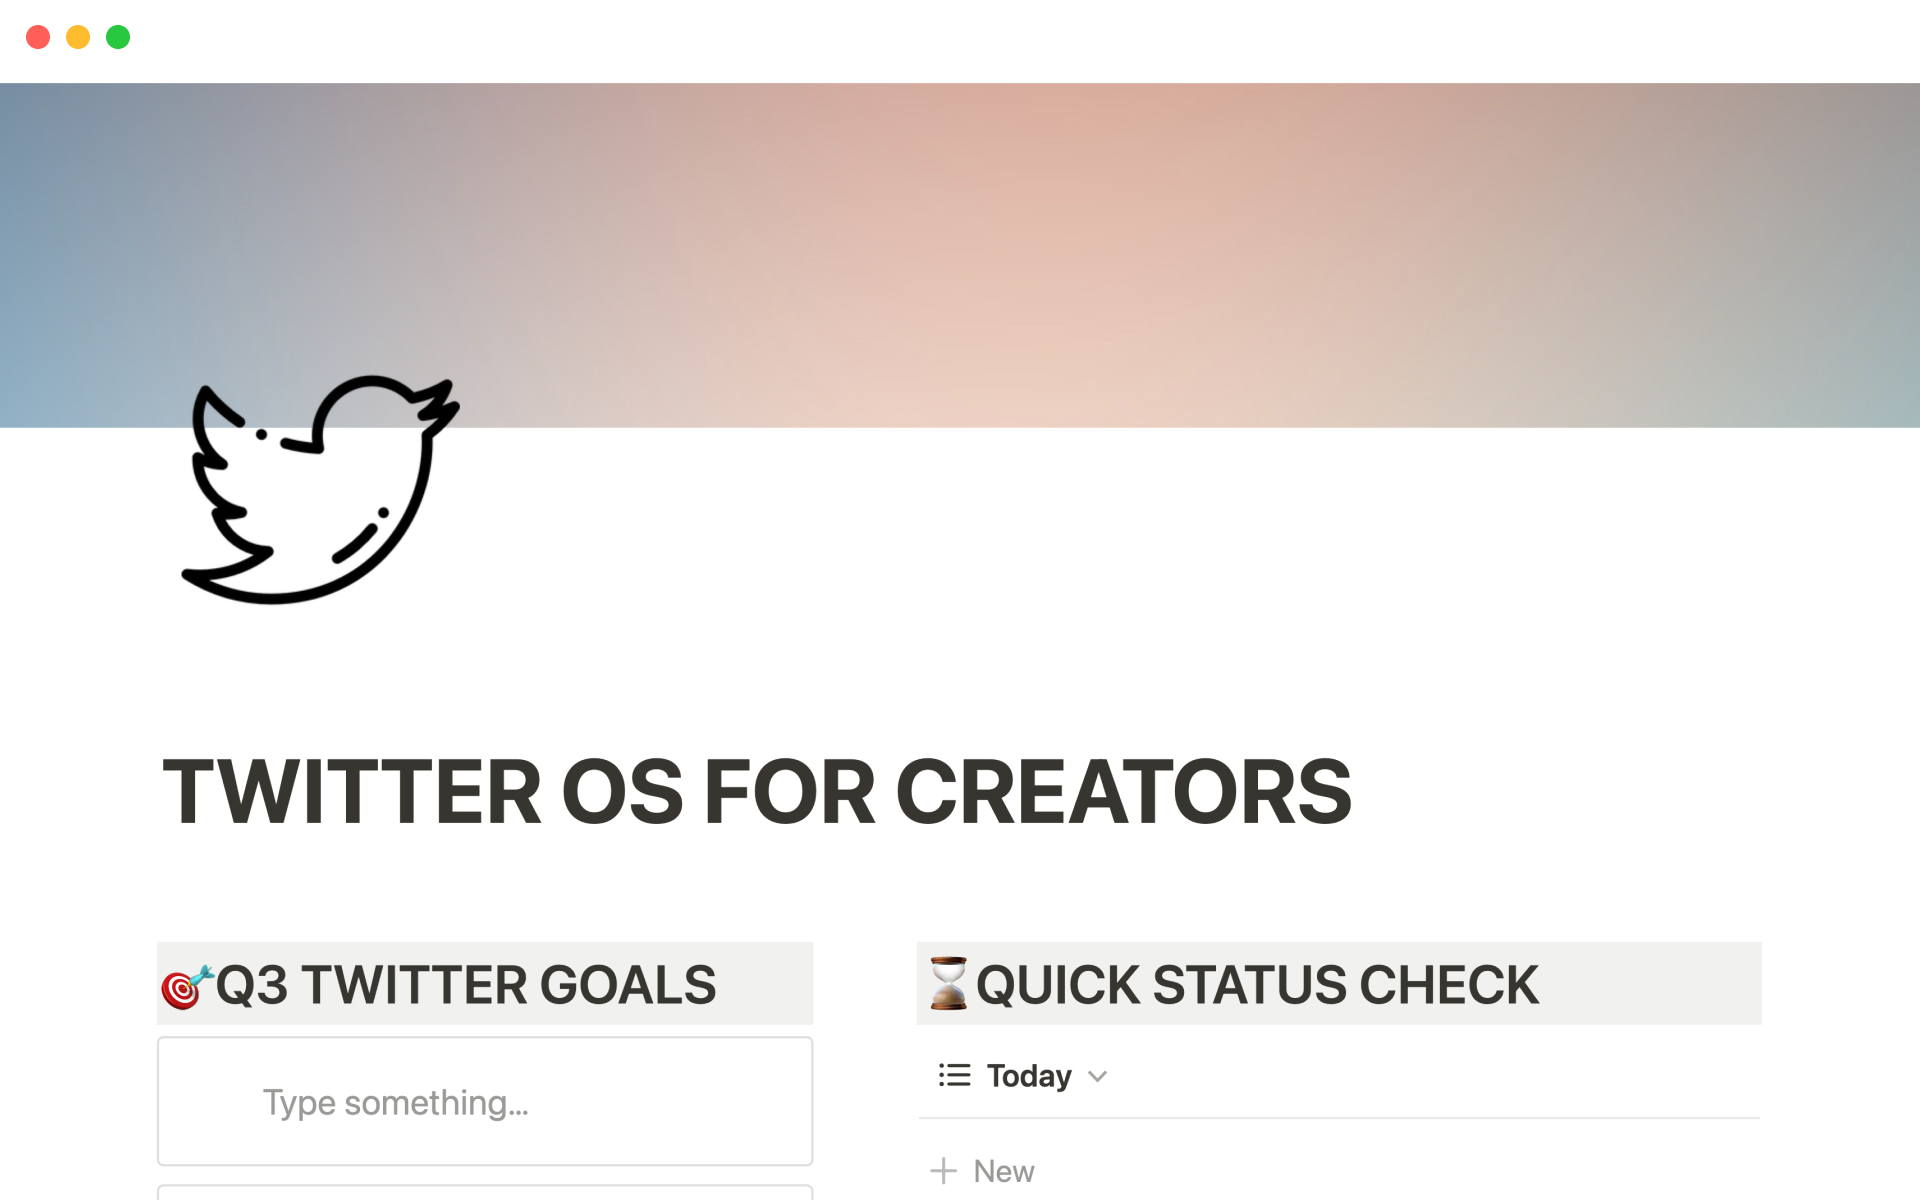 Uma prévia do modelo para Twitter OS for creators